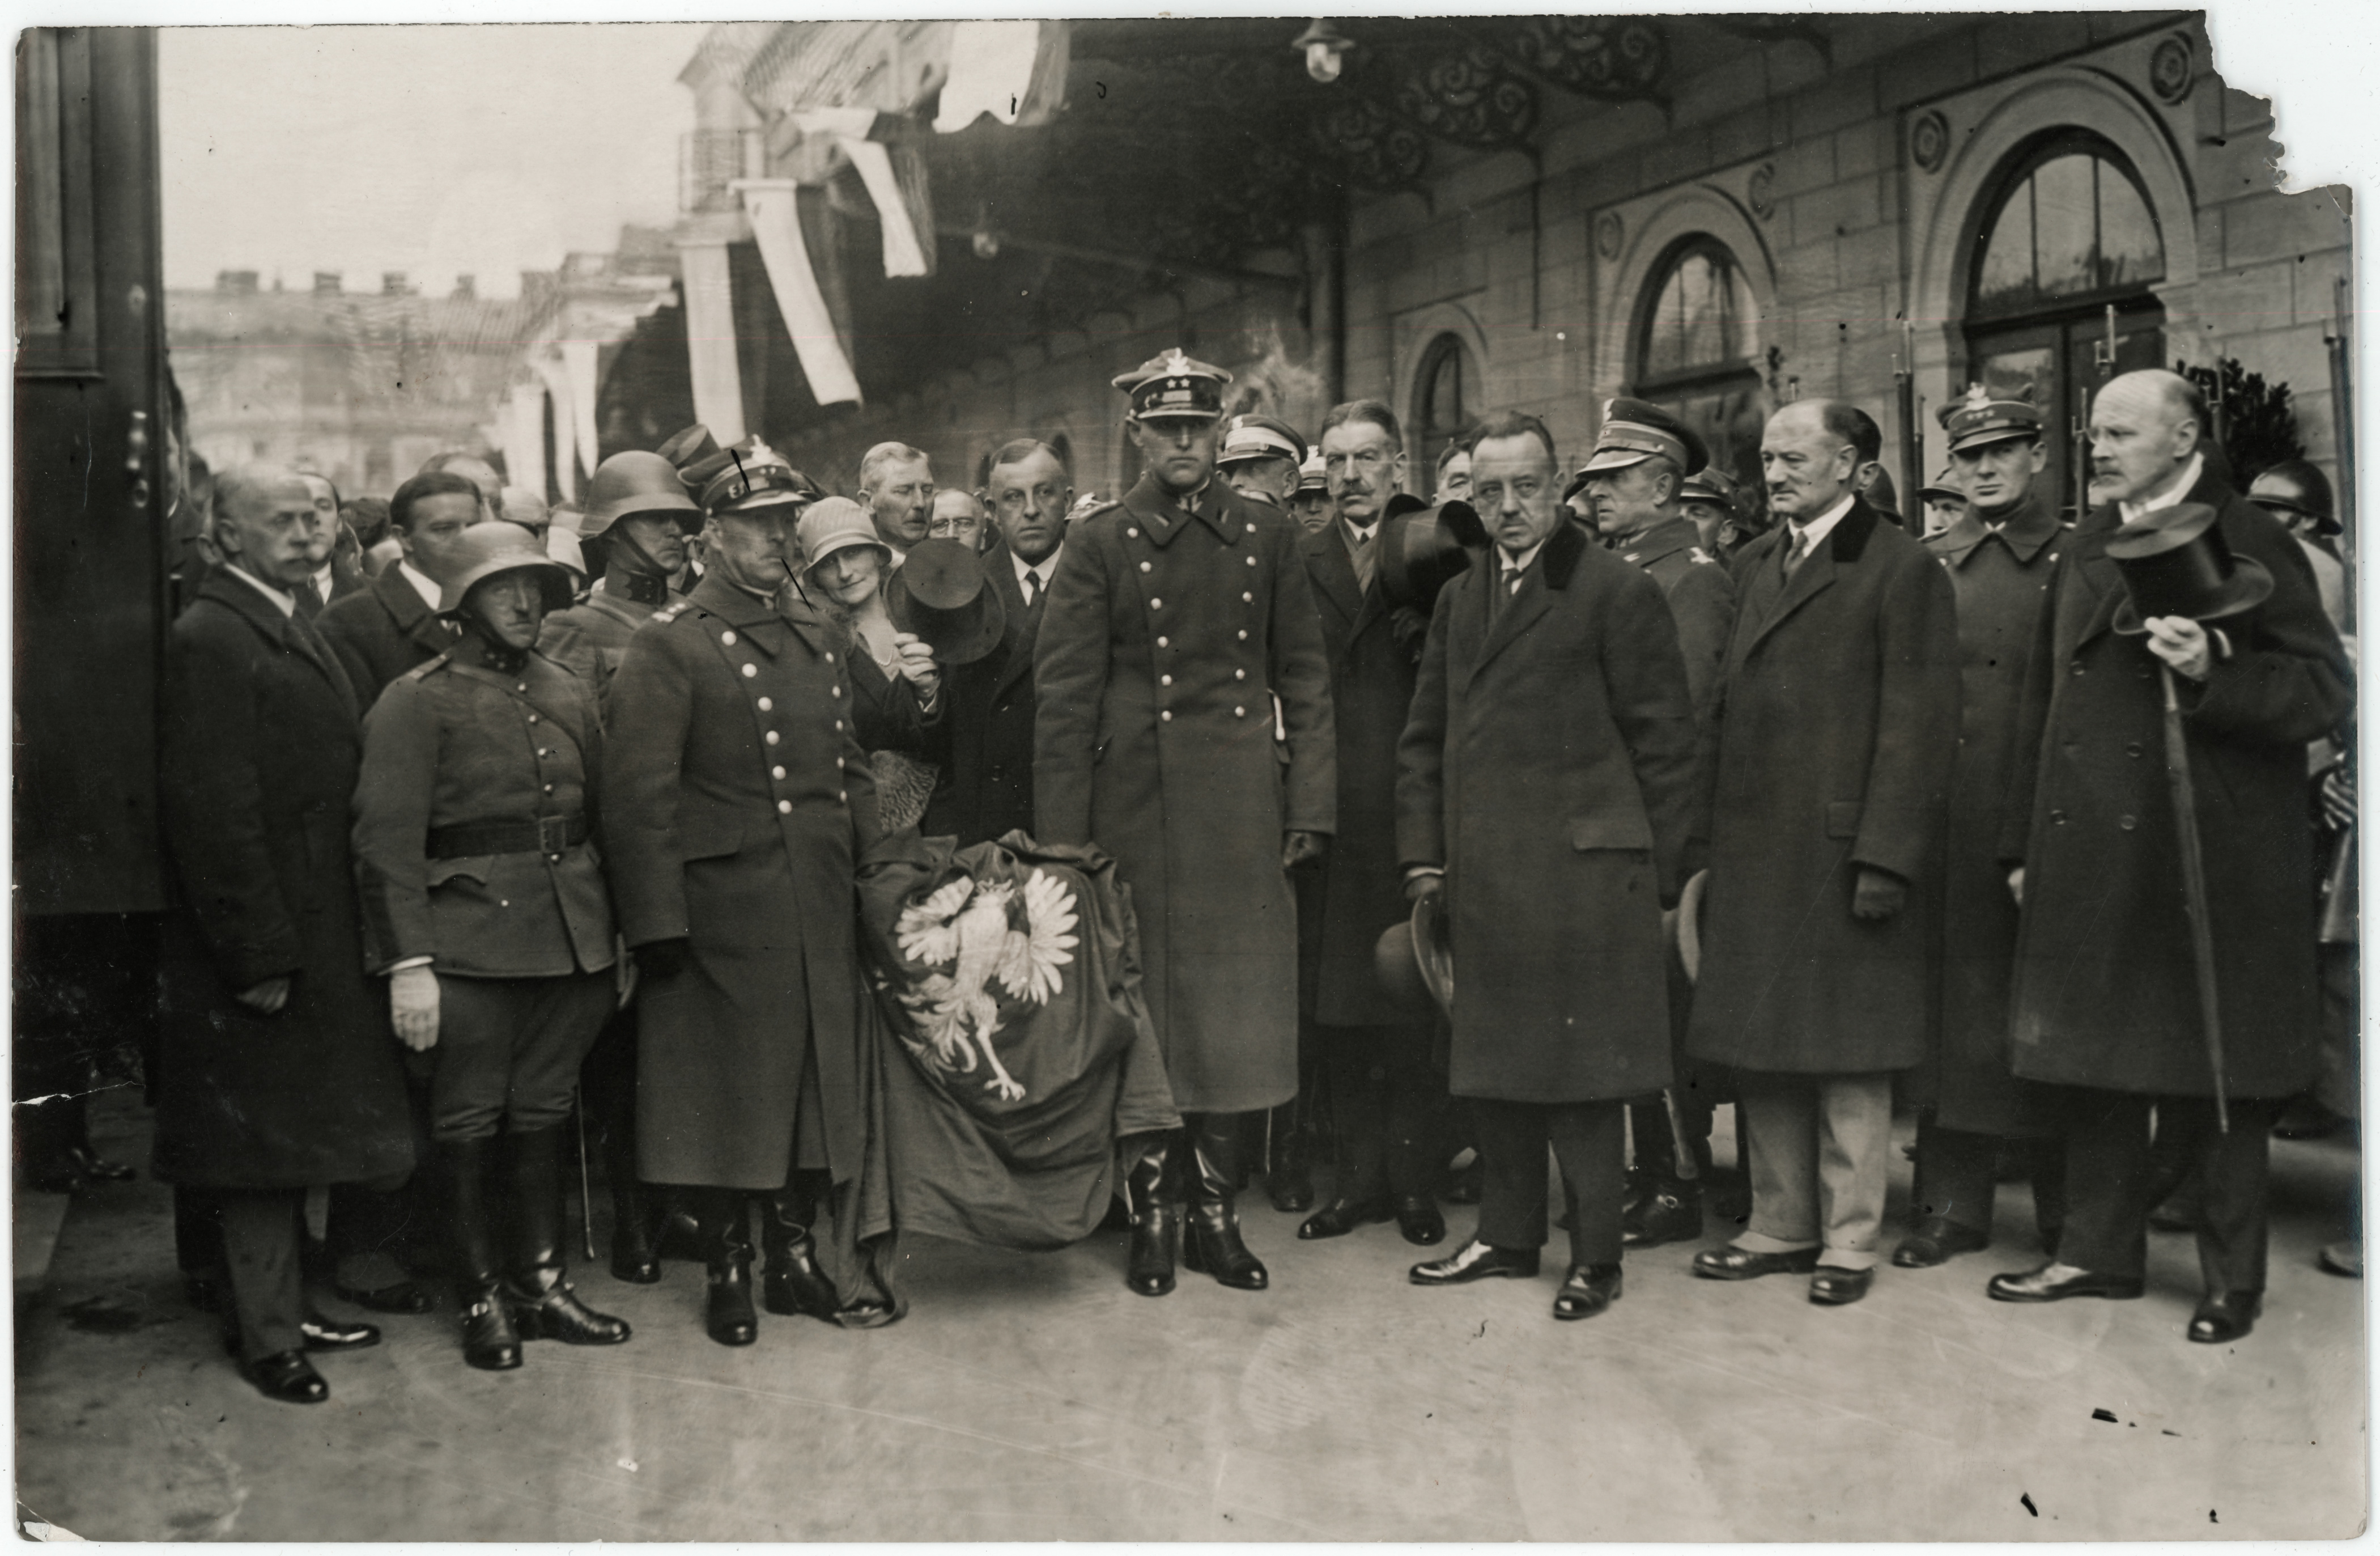 Powitanie przez wojsko i oficjalne delegacje serca Tadeusza Kościuszki sprowadzonego do Polski z Rapperswil w Szwajcarii. Dworzec Główny w Warszawie, 15 października 1927 r .